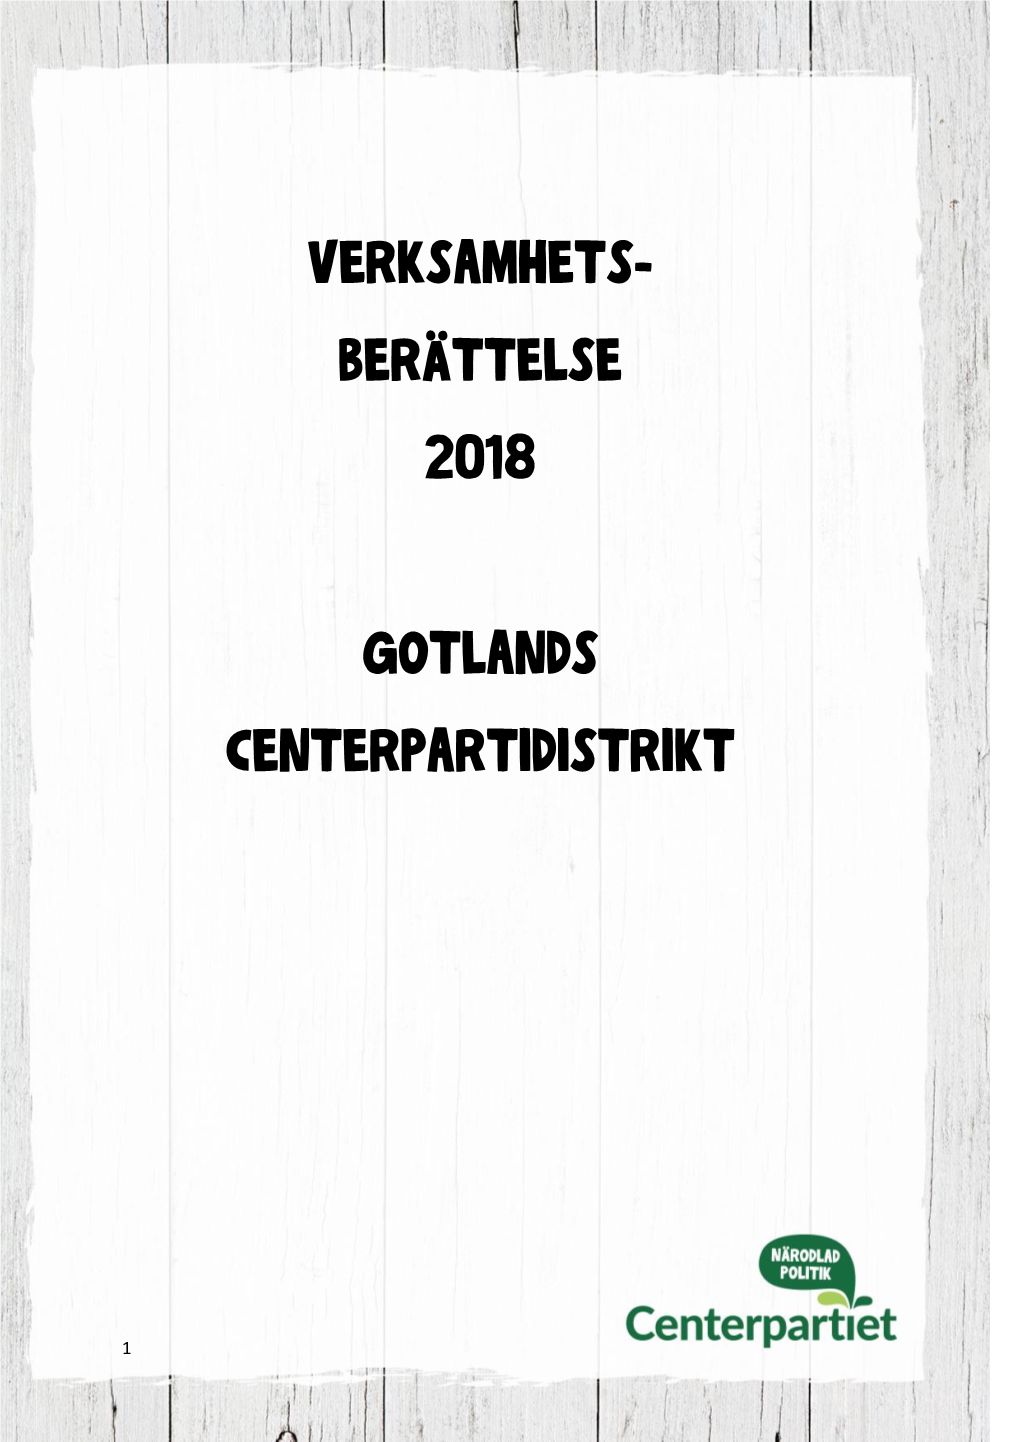 Verksamhets- Berättelse 2018 Gotlands Centerpartidistrikt